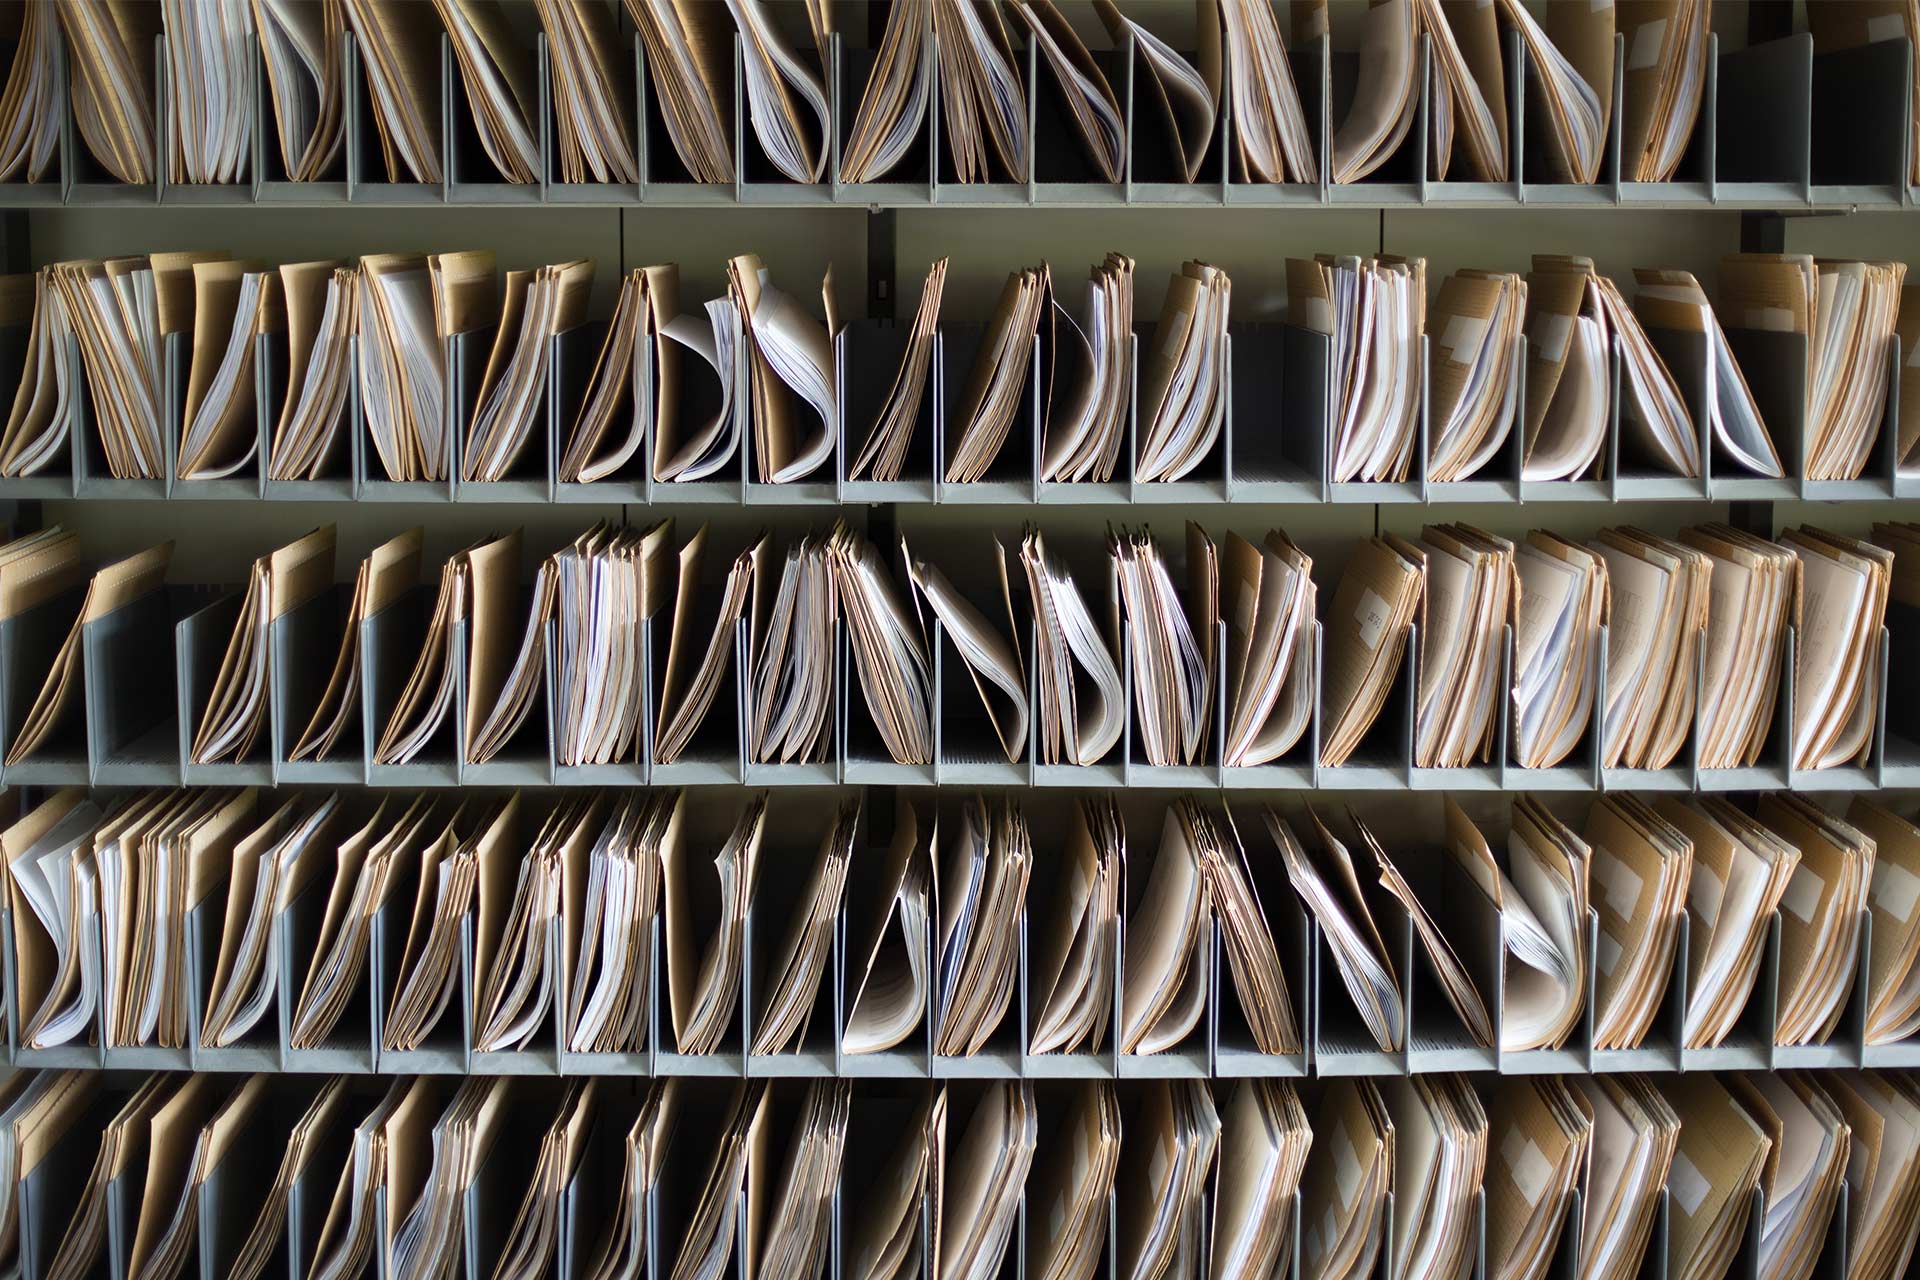 Папки з документами, розкладені по відділеннях на полицях.